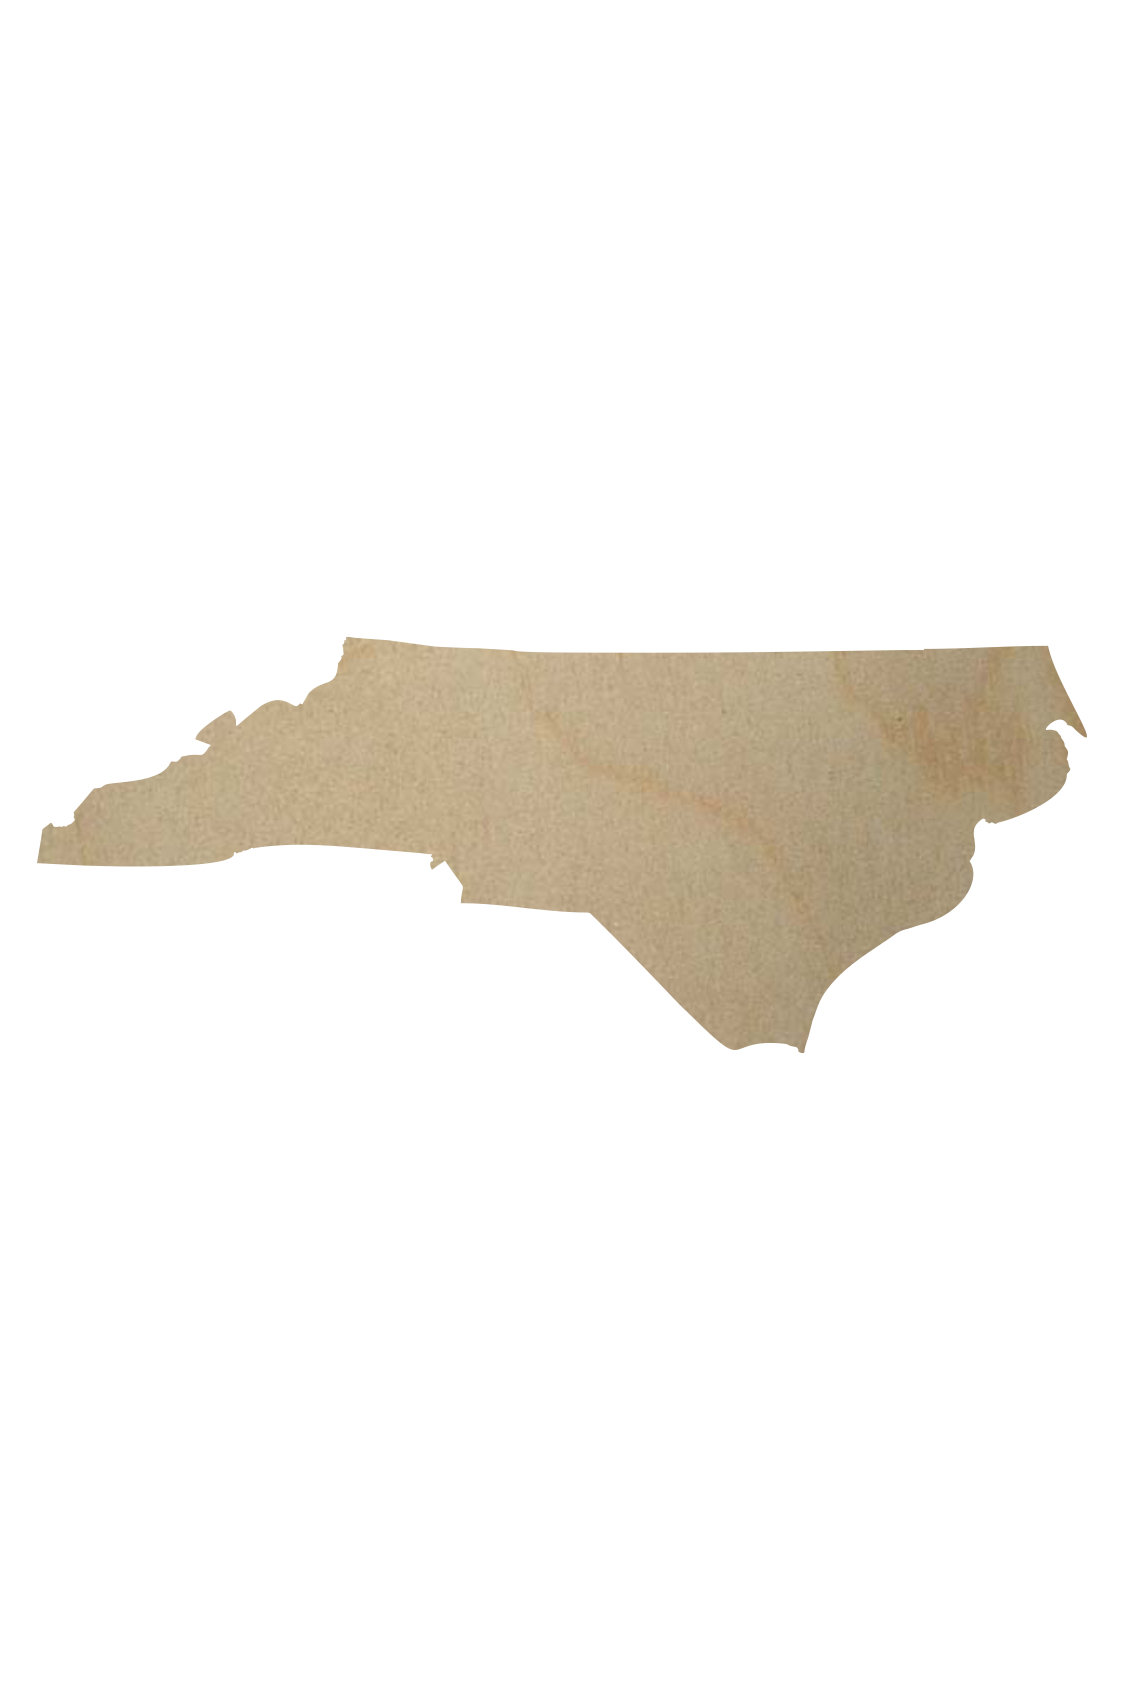 Wooden North Carolina Cutout